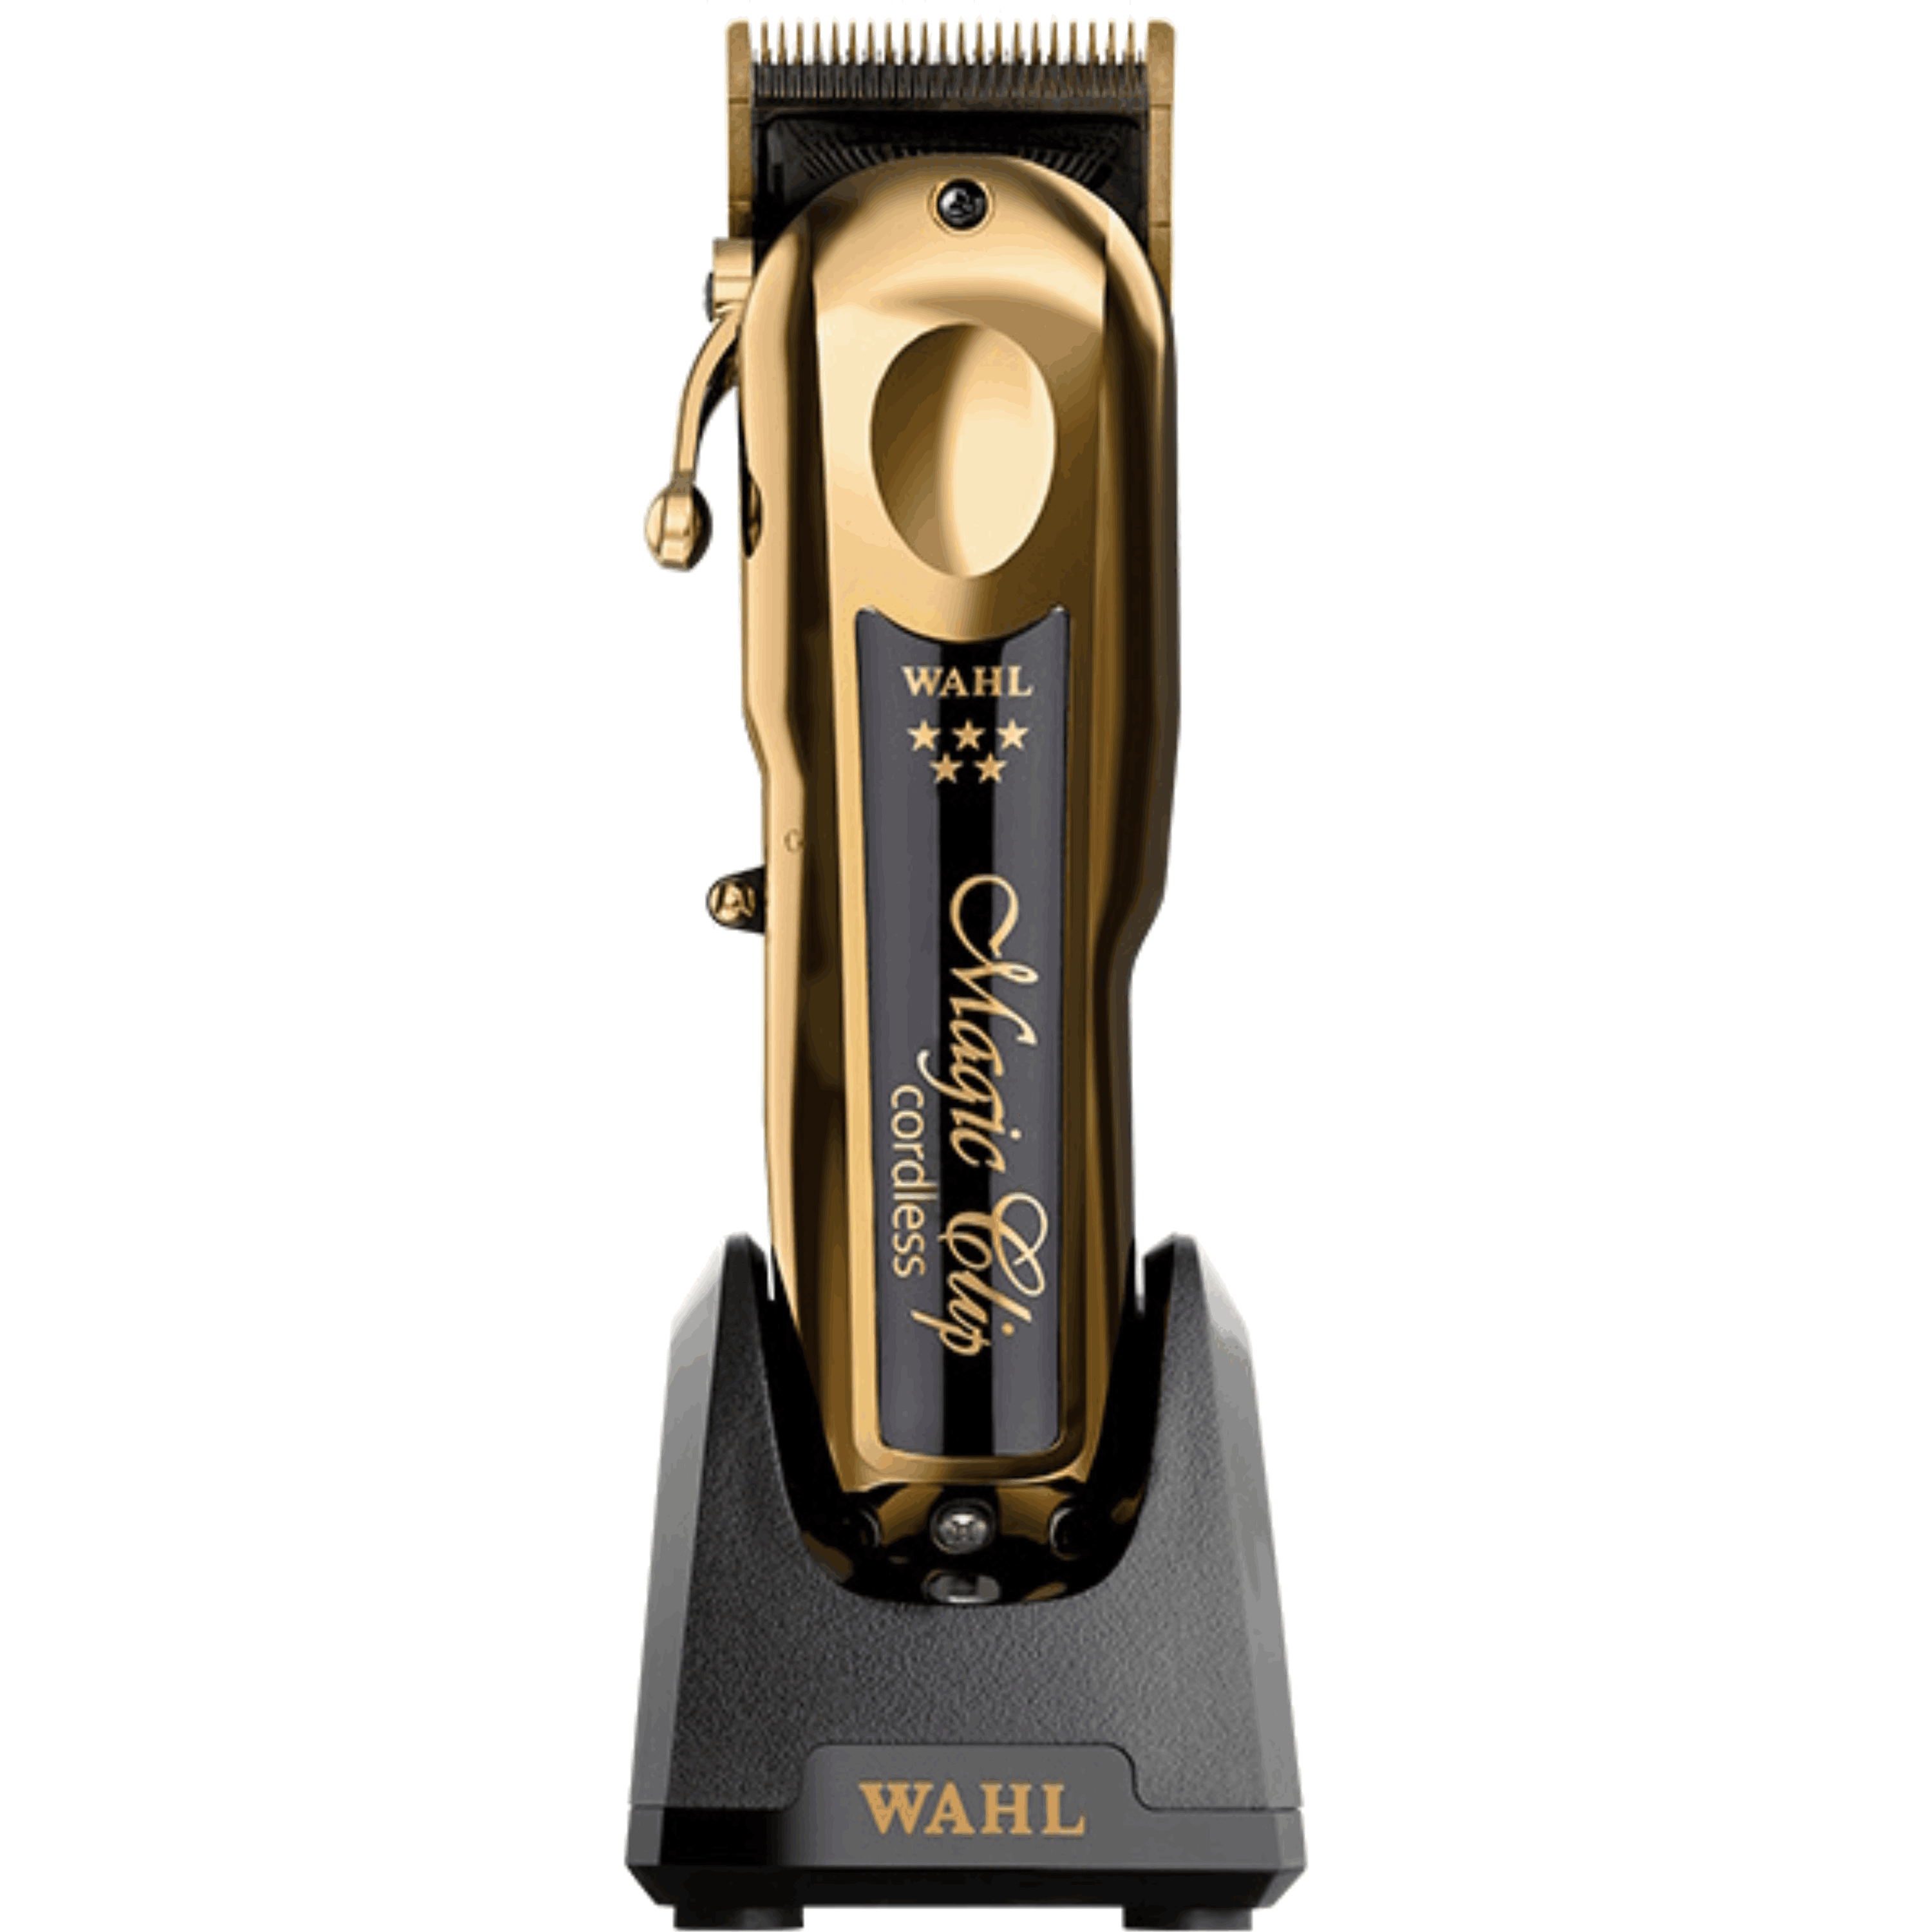 מכונת תספורת נטענת מקצועית 08148-716 מסדרת Wahl magic clip 5 stars - צבע זהב אחריות ע